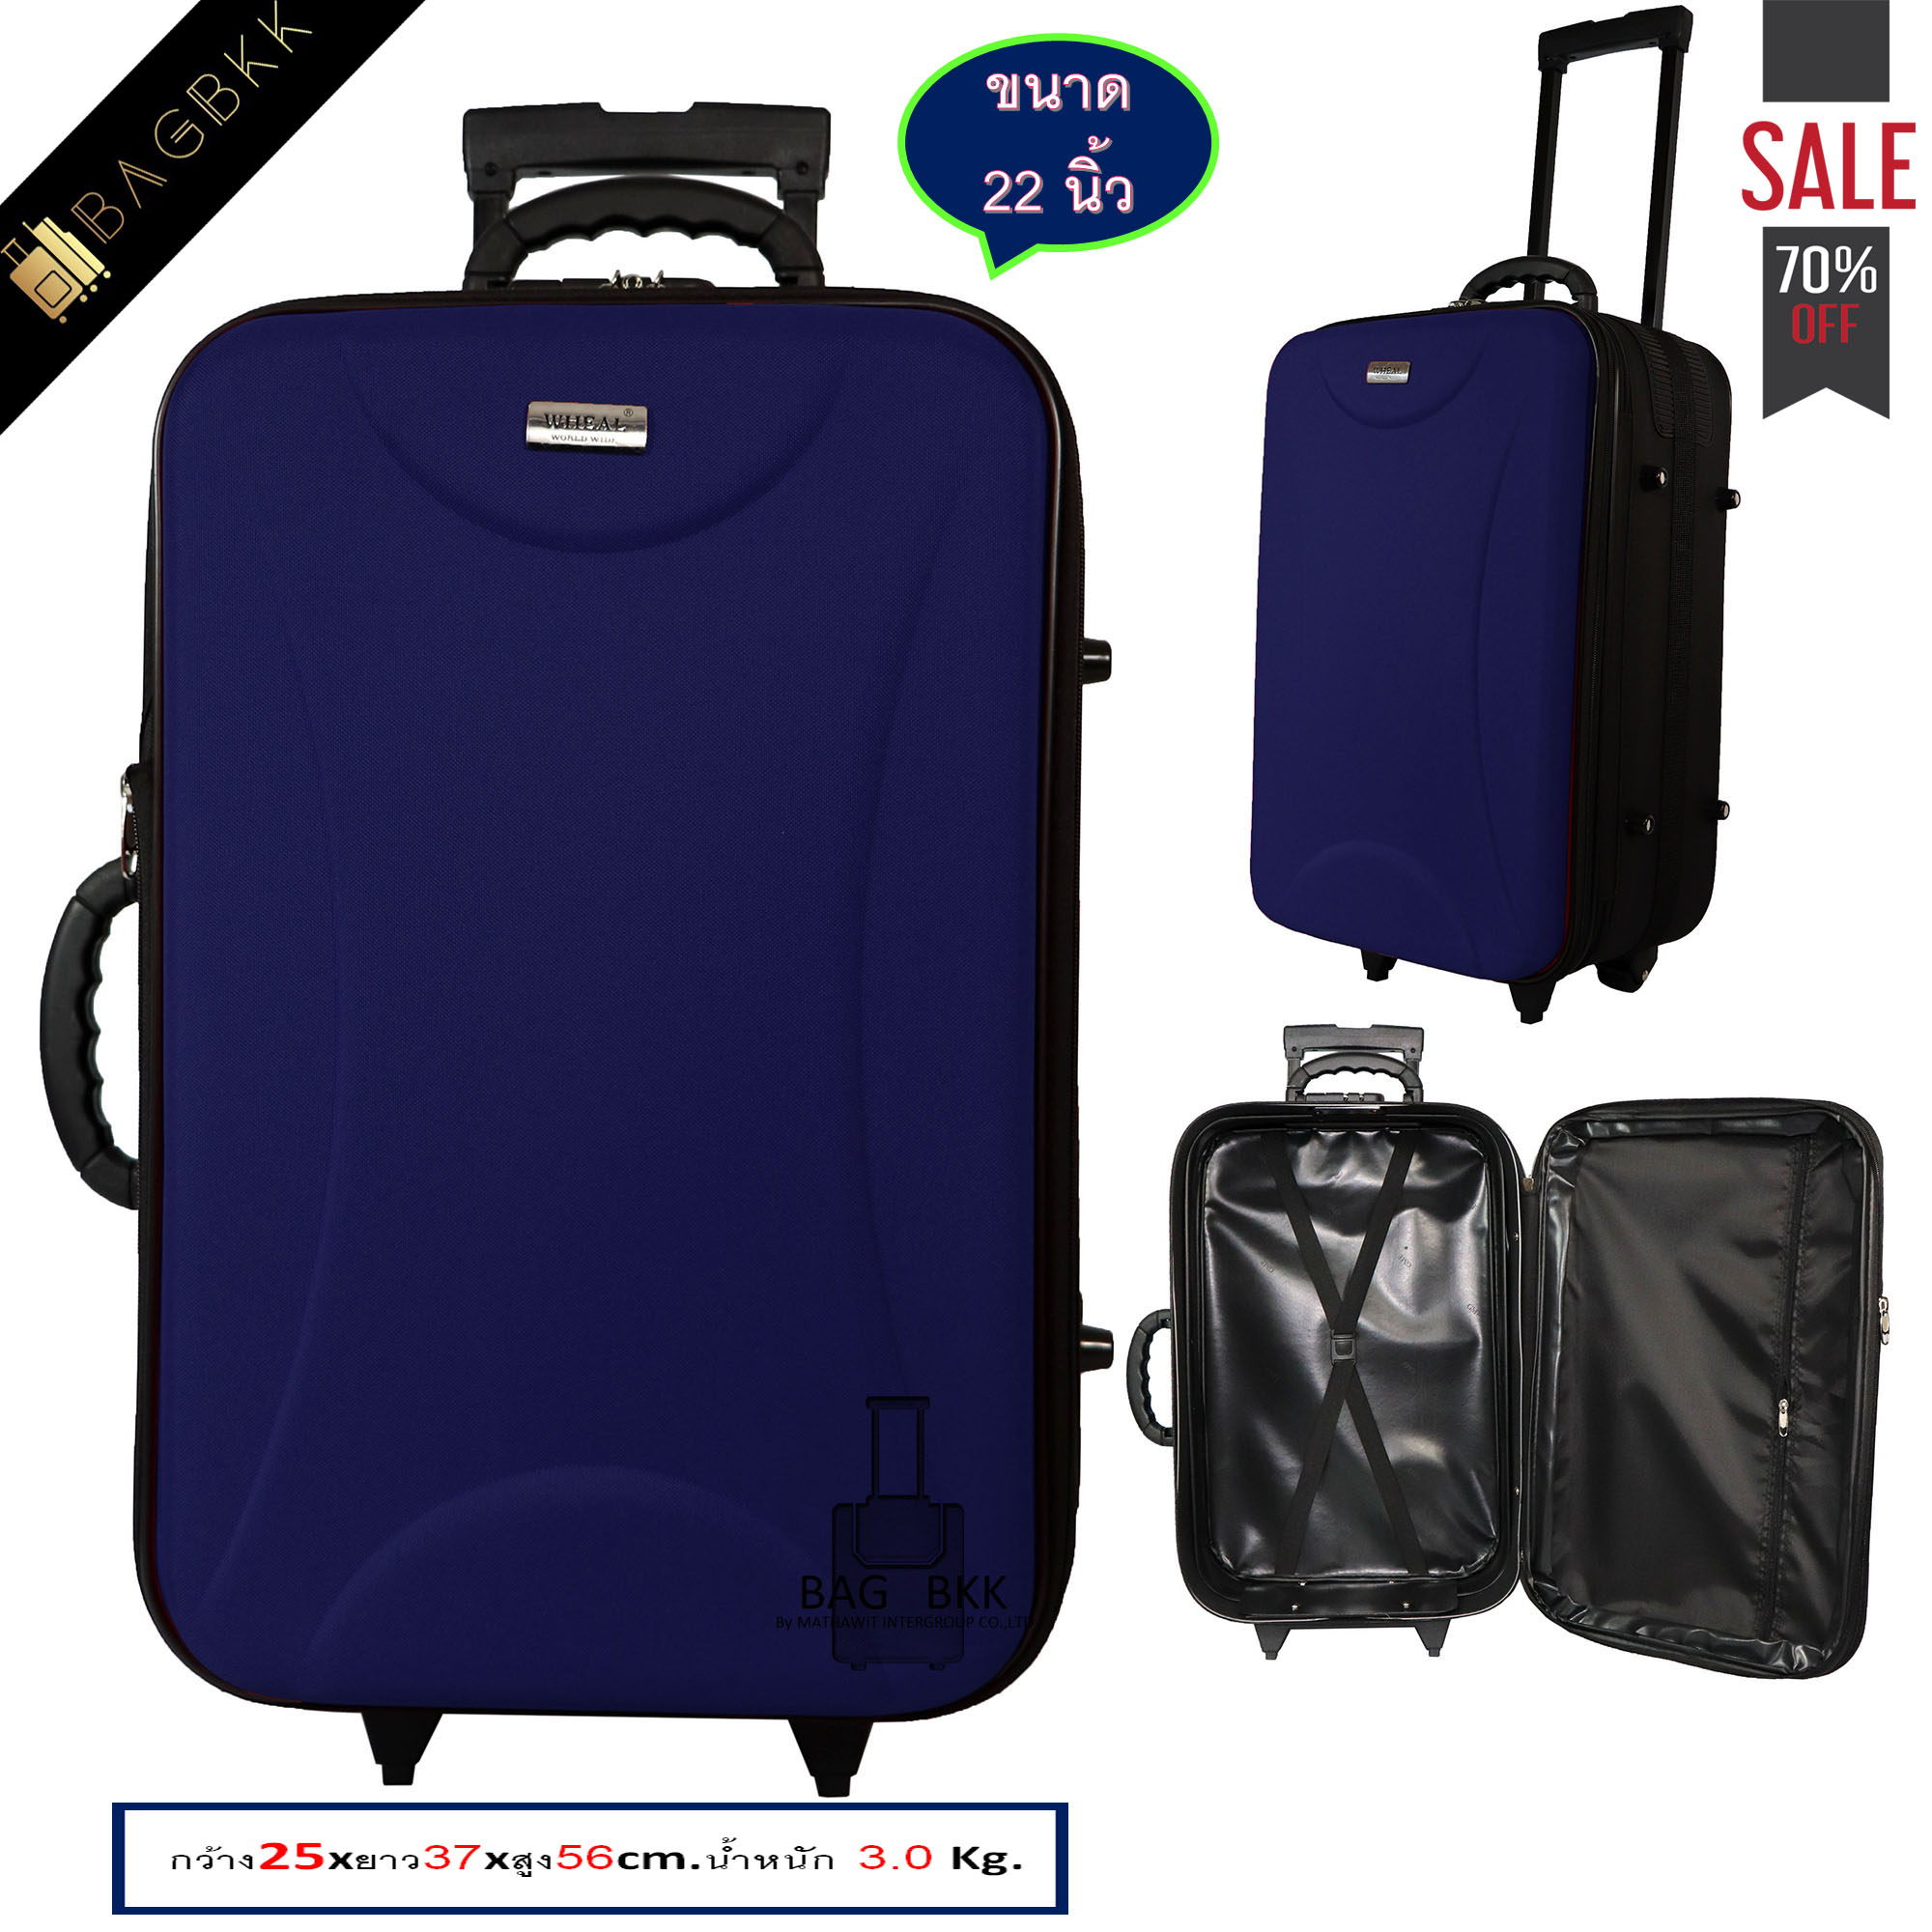 BAG BKK Luggage Wheal กระเป๋าเดินทาง  กระเป๋าล้อลากหน้าโฟมขนาด แบบซิปขยาย2 ล้อด้านหลัง   22 นิ้ว รหัสล๊อค Code F1616-22 รุ่น Fulfill